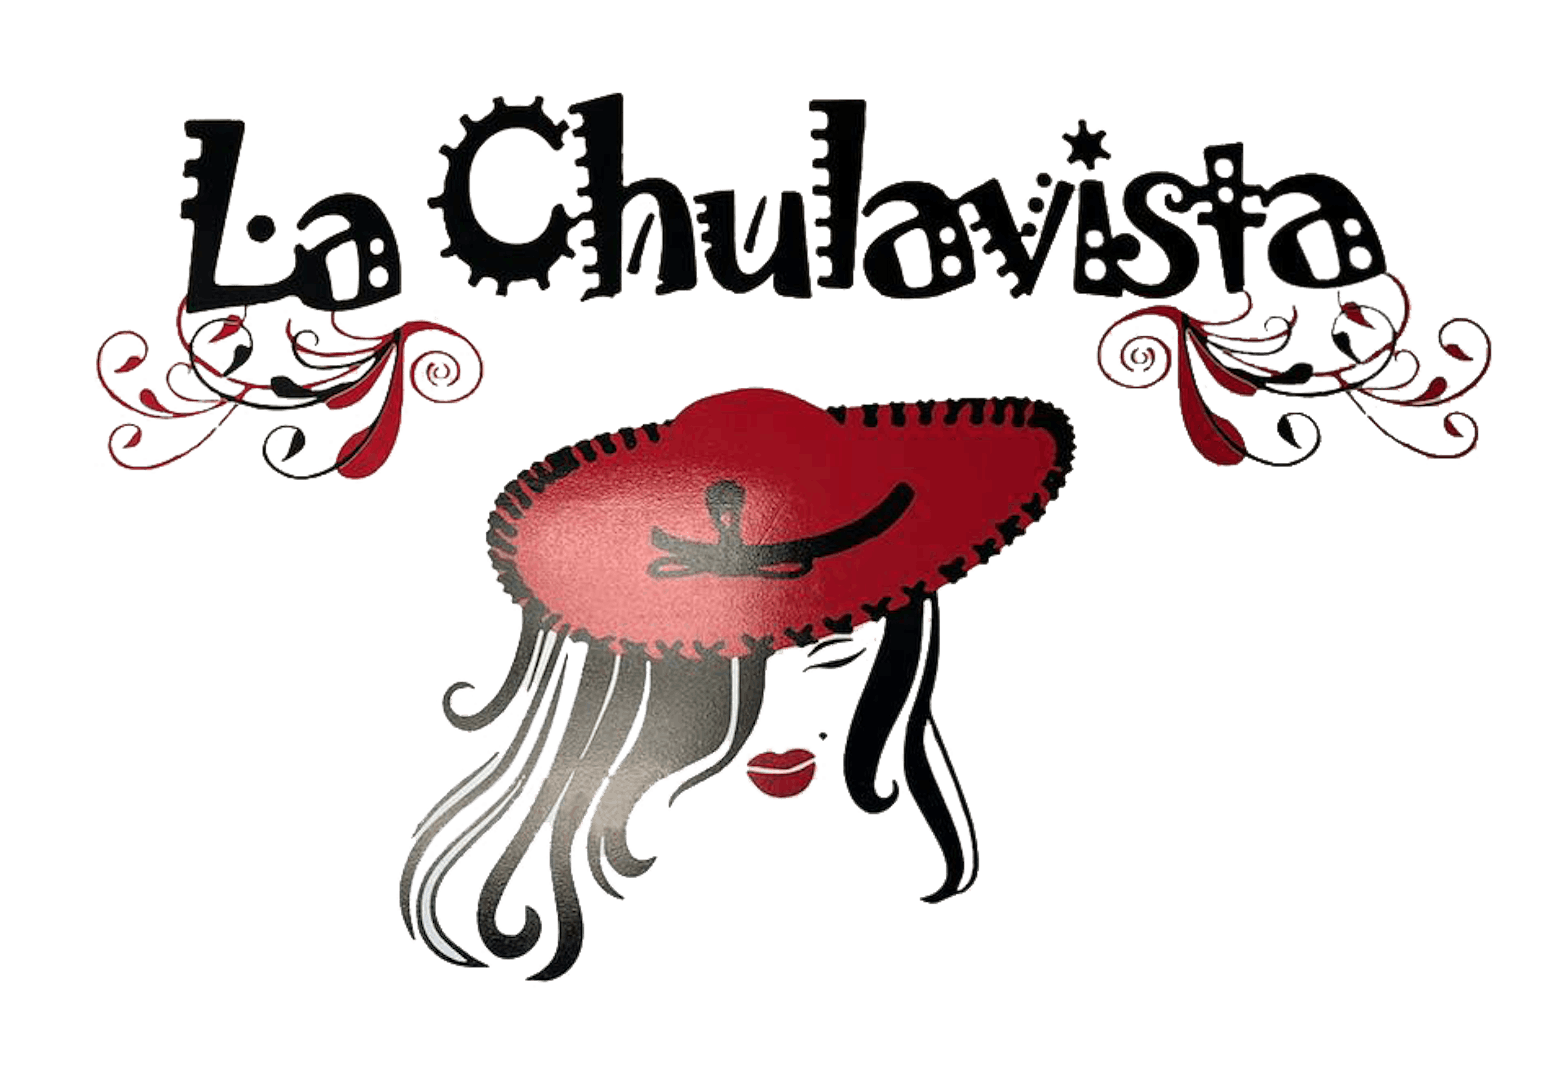 La Chulavista